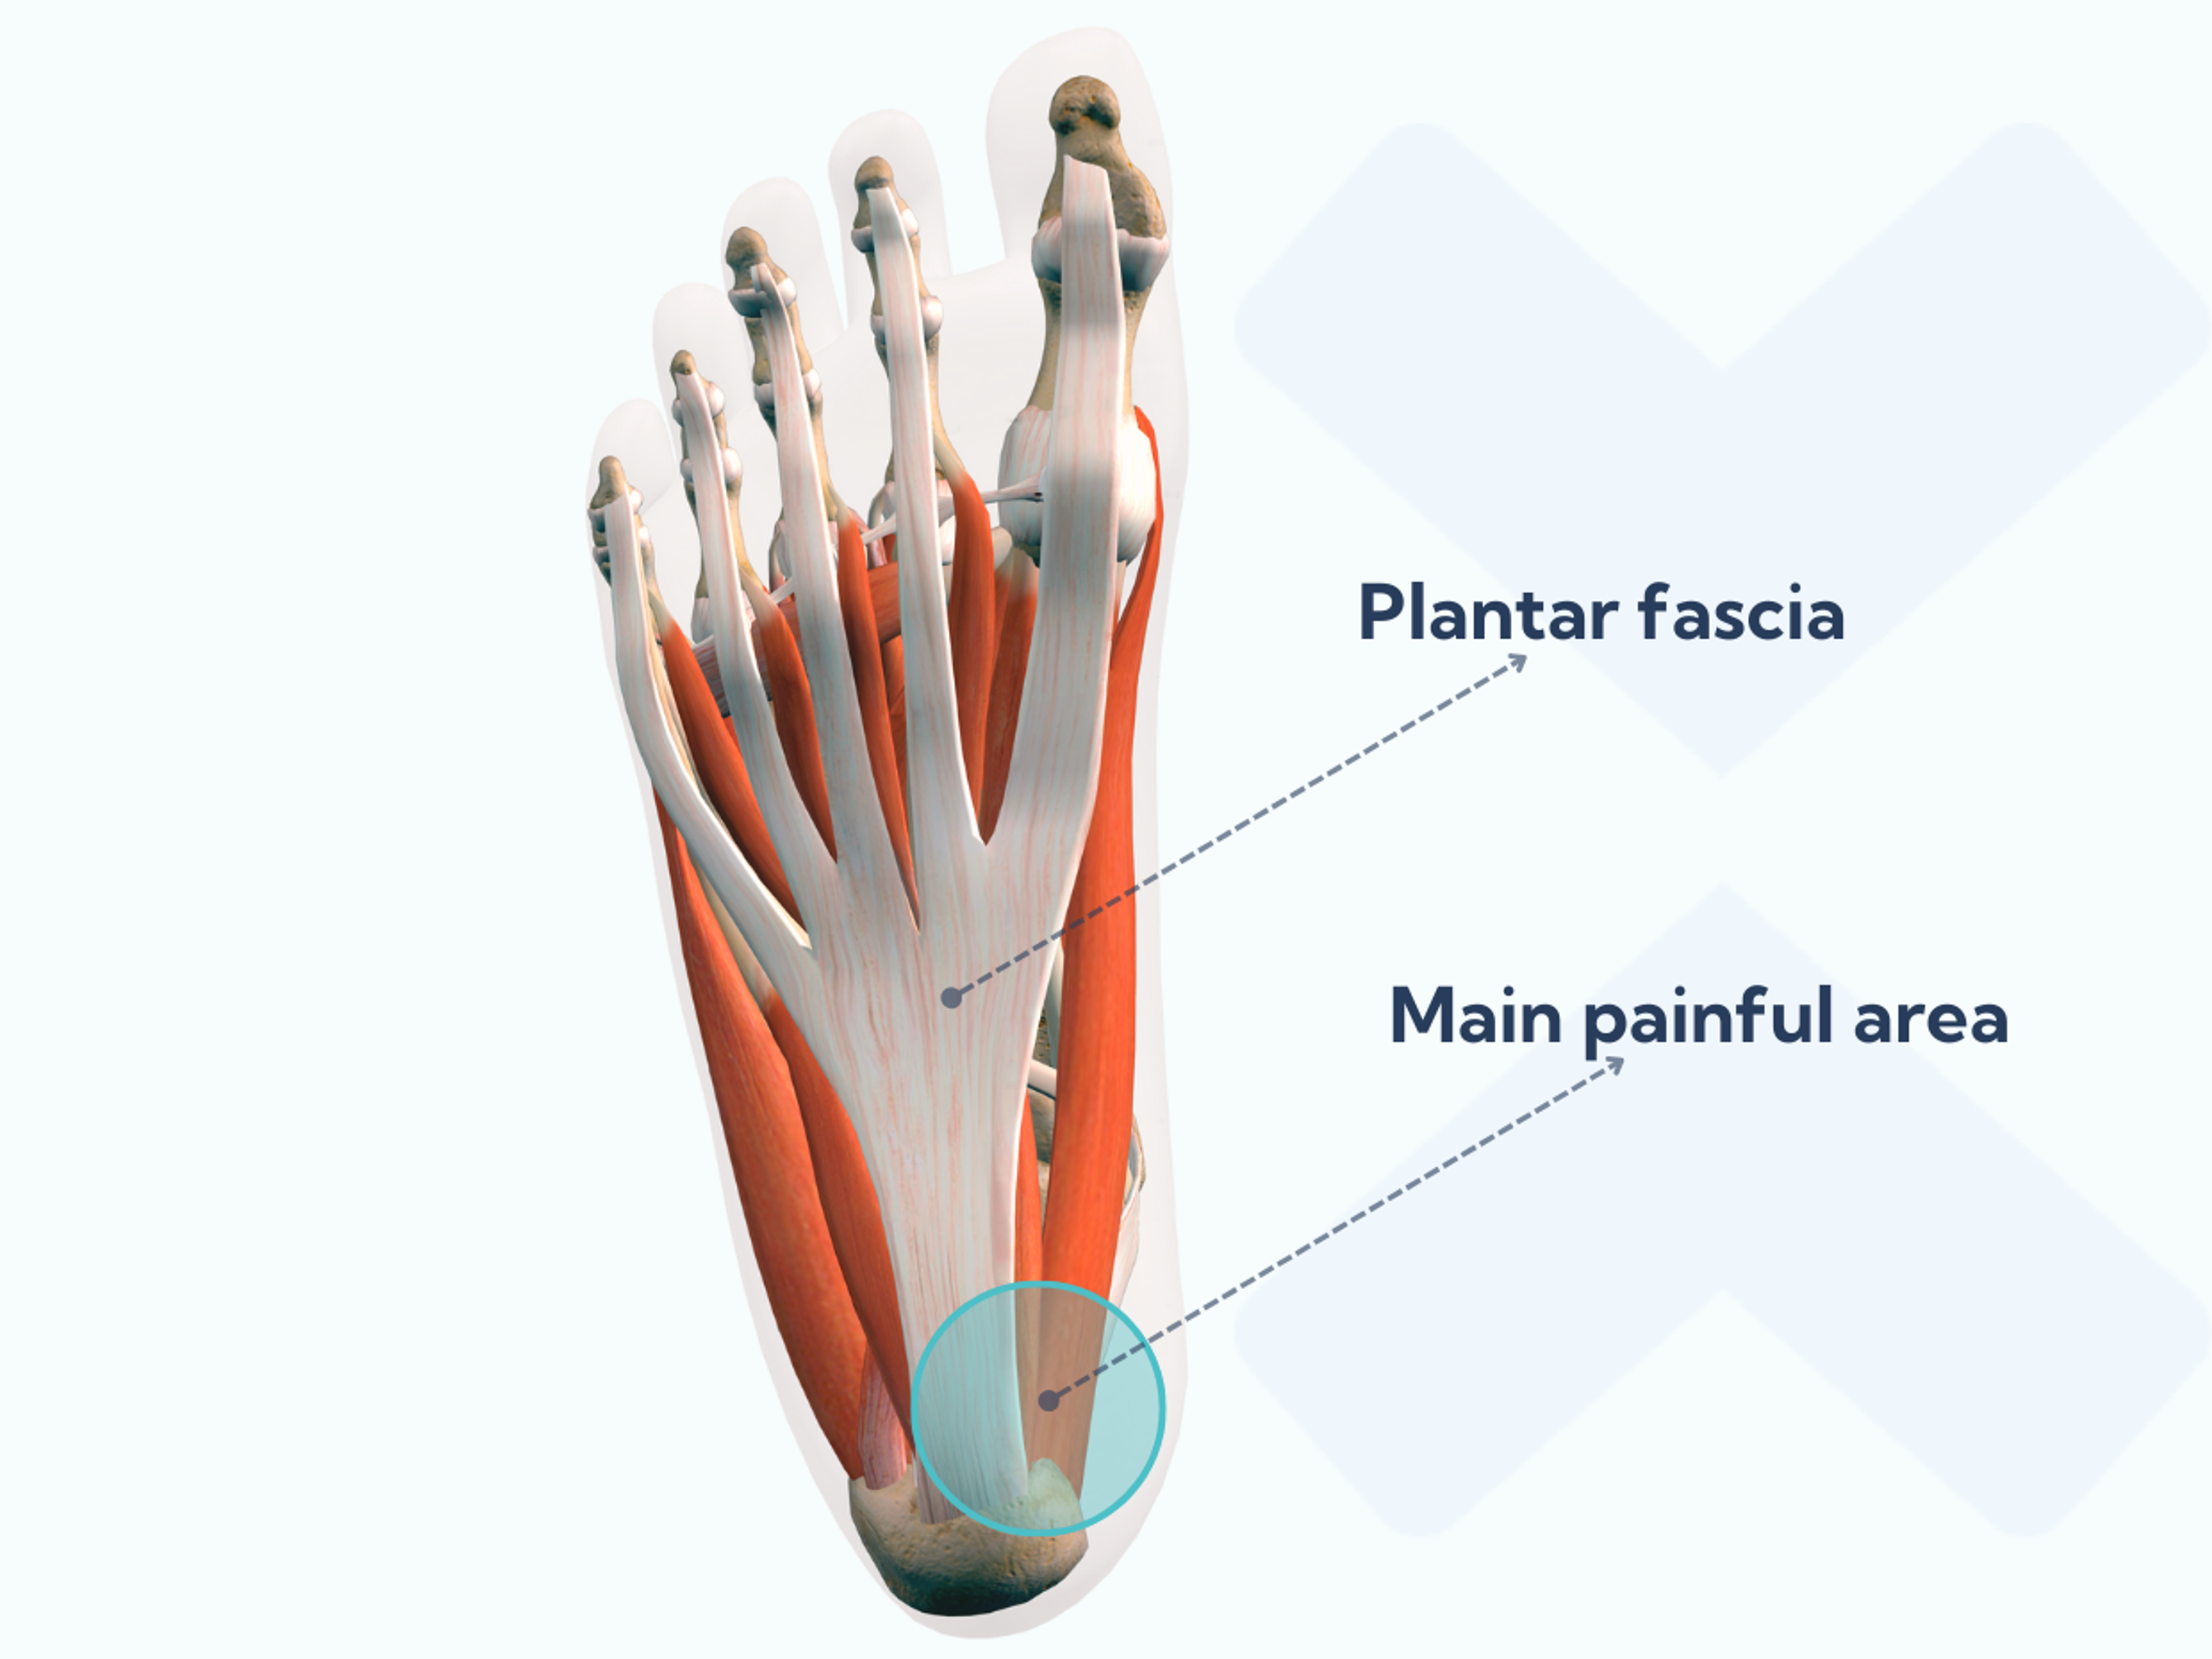 ¿Dónde está la fascia plantar? Está en la parte baja del pie y va desde el hueso del talón hasta los dedos.